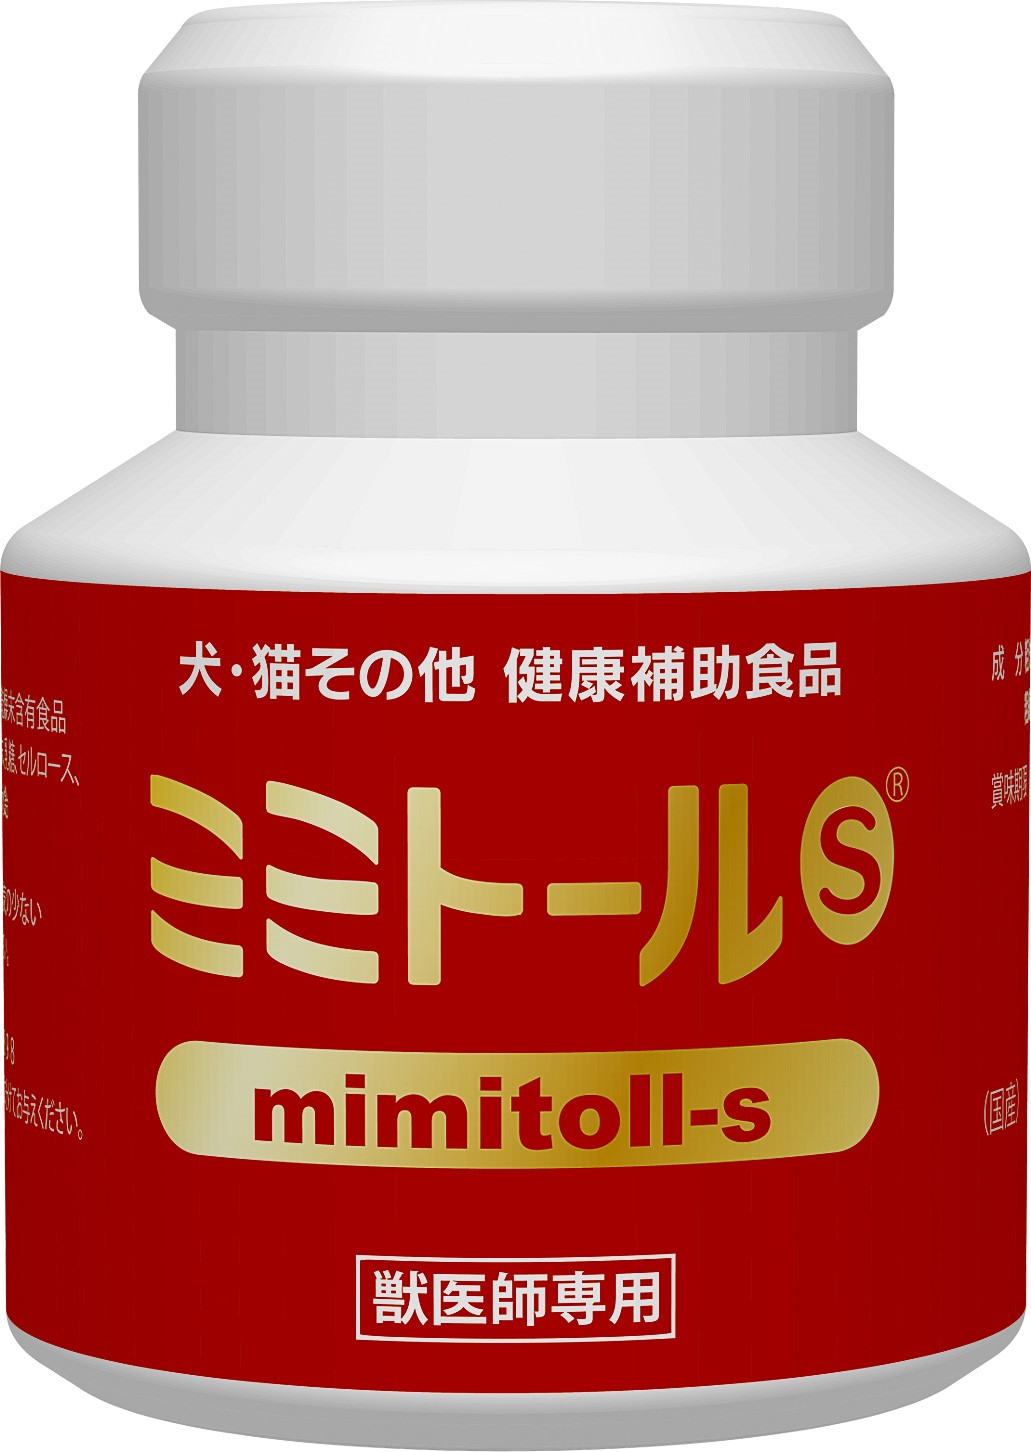 脈明通S （含有蚯蚓乾燥粉末食品）
Mimitoll-S